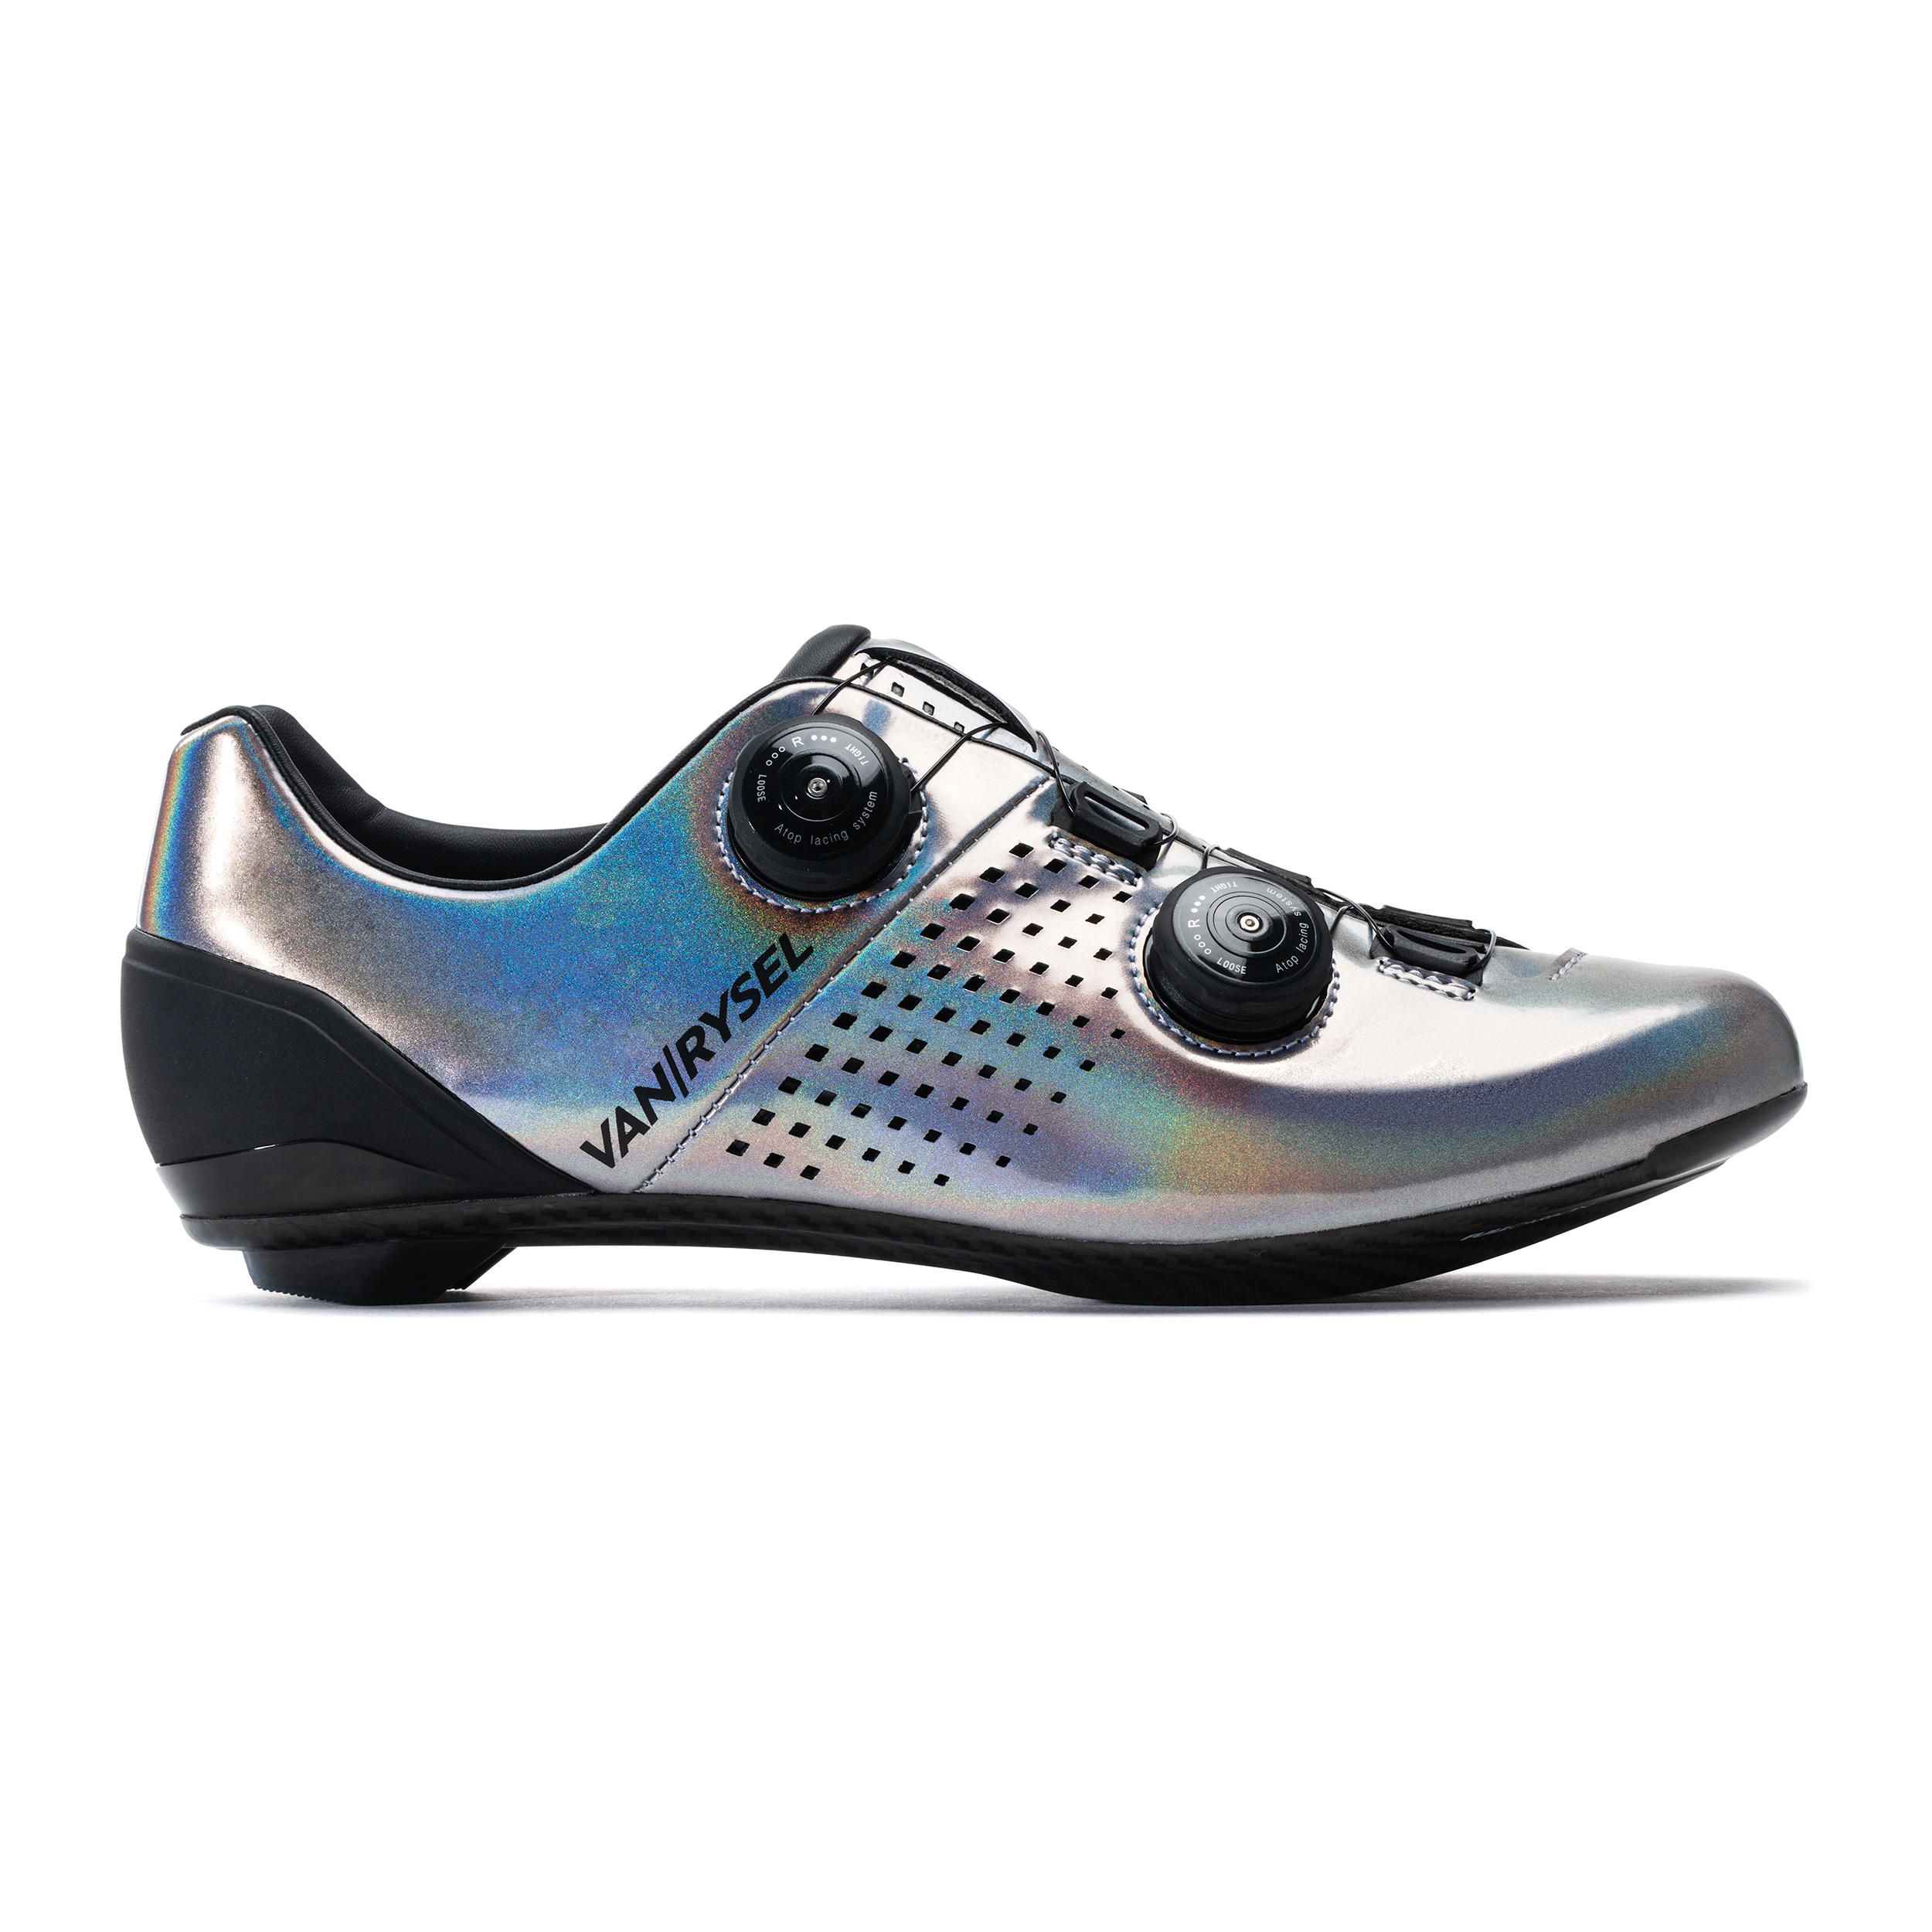 chaussures de vélo cyclo-sport van rysel gris iridescent - van rysel